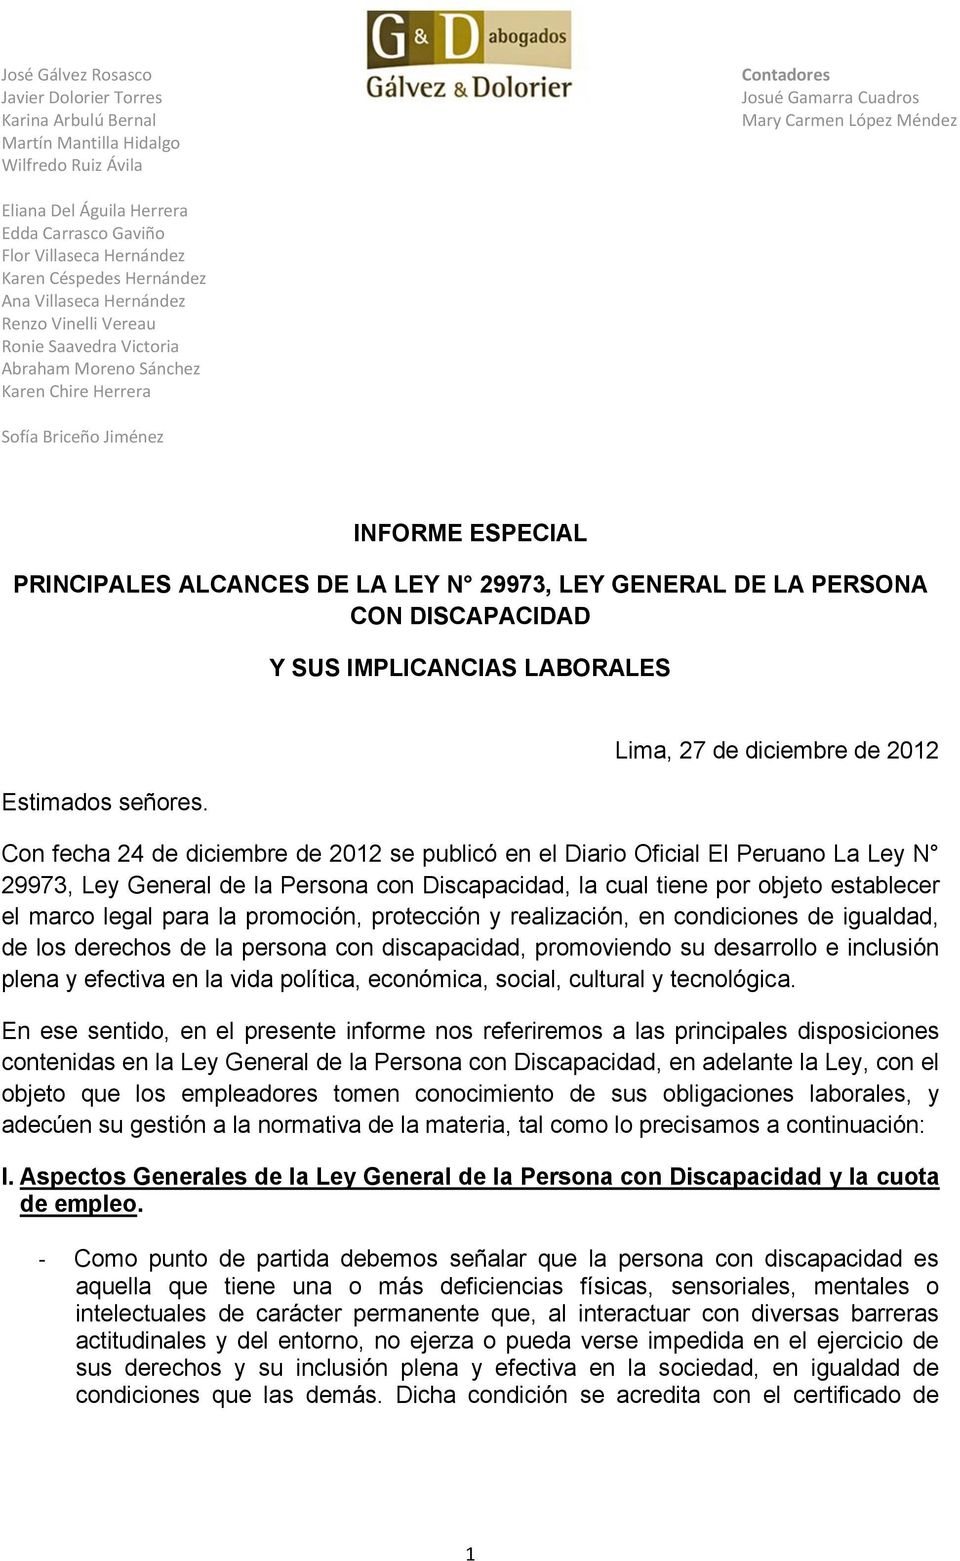 INFORME ESPECIAL PRINCIPALES ALCANCES DE LA LEY N 29973, LEY GENERAL DE LA PERSONA CON DISCAPACIDAD Y SUS IMPLICANCIAS LABORALES Estimados señores.